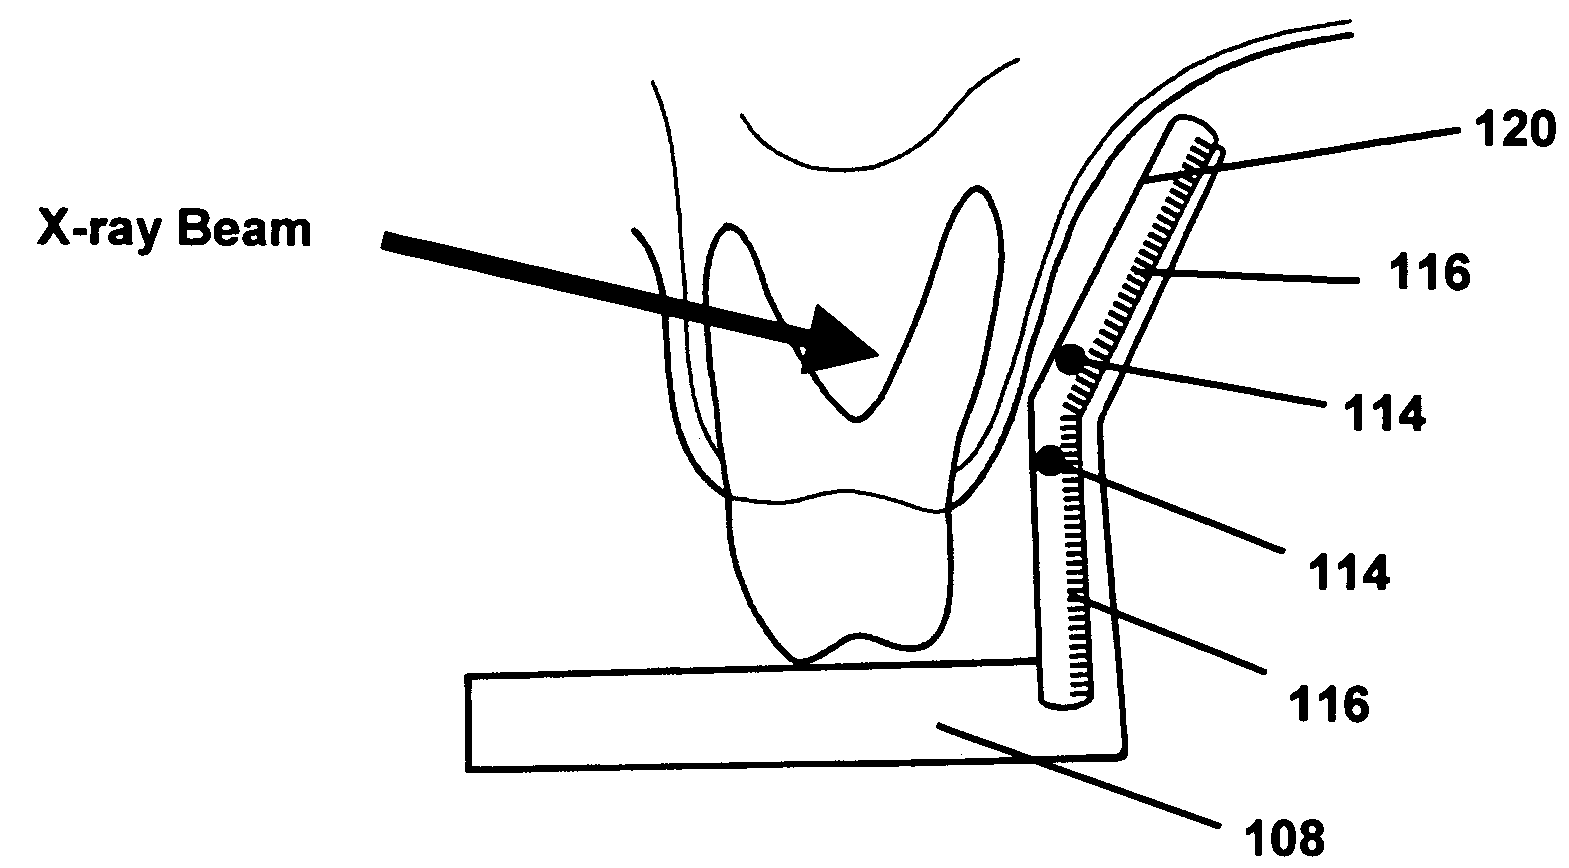 Anatomically conforming intraoral dental radiographic sensor